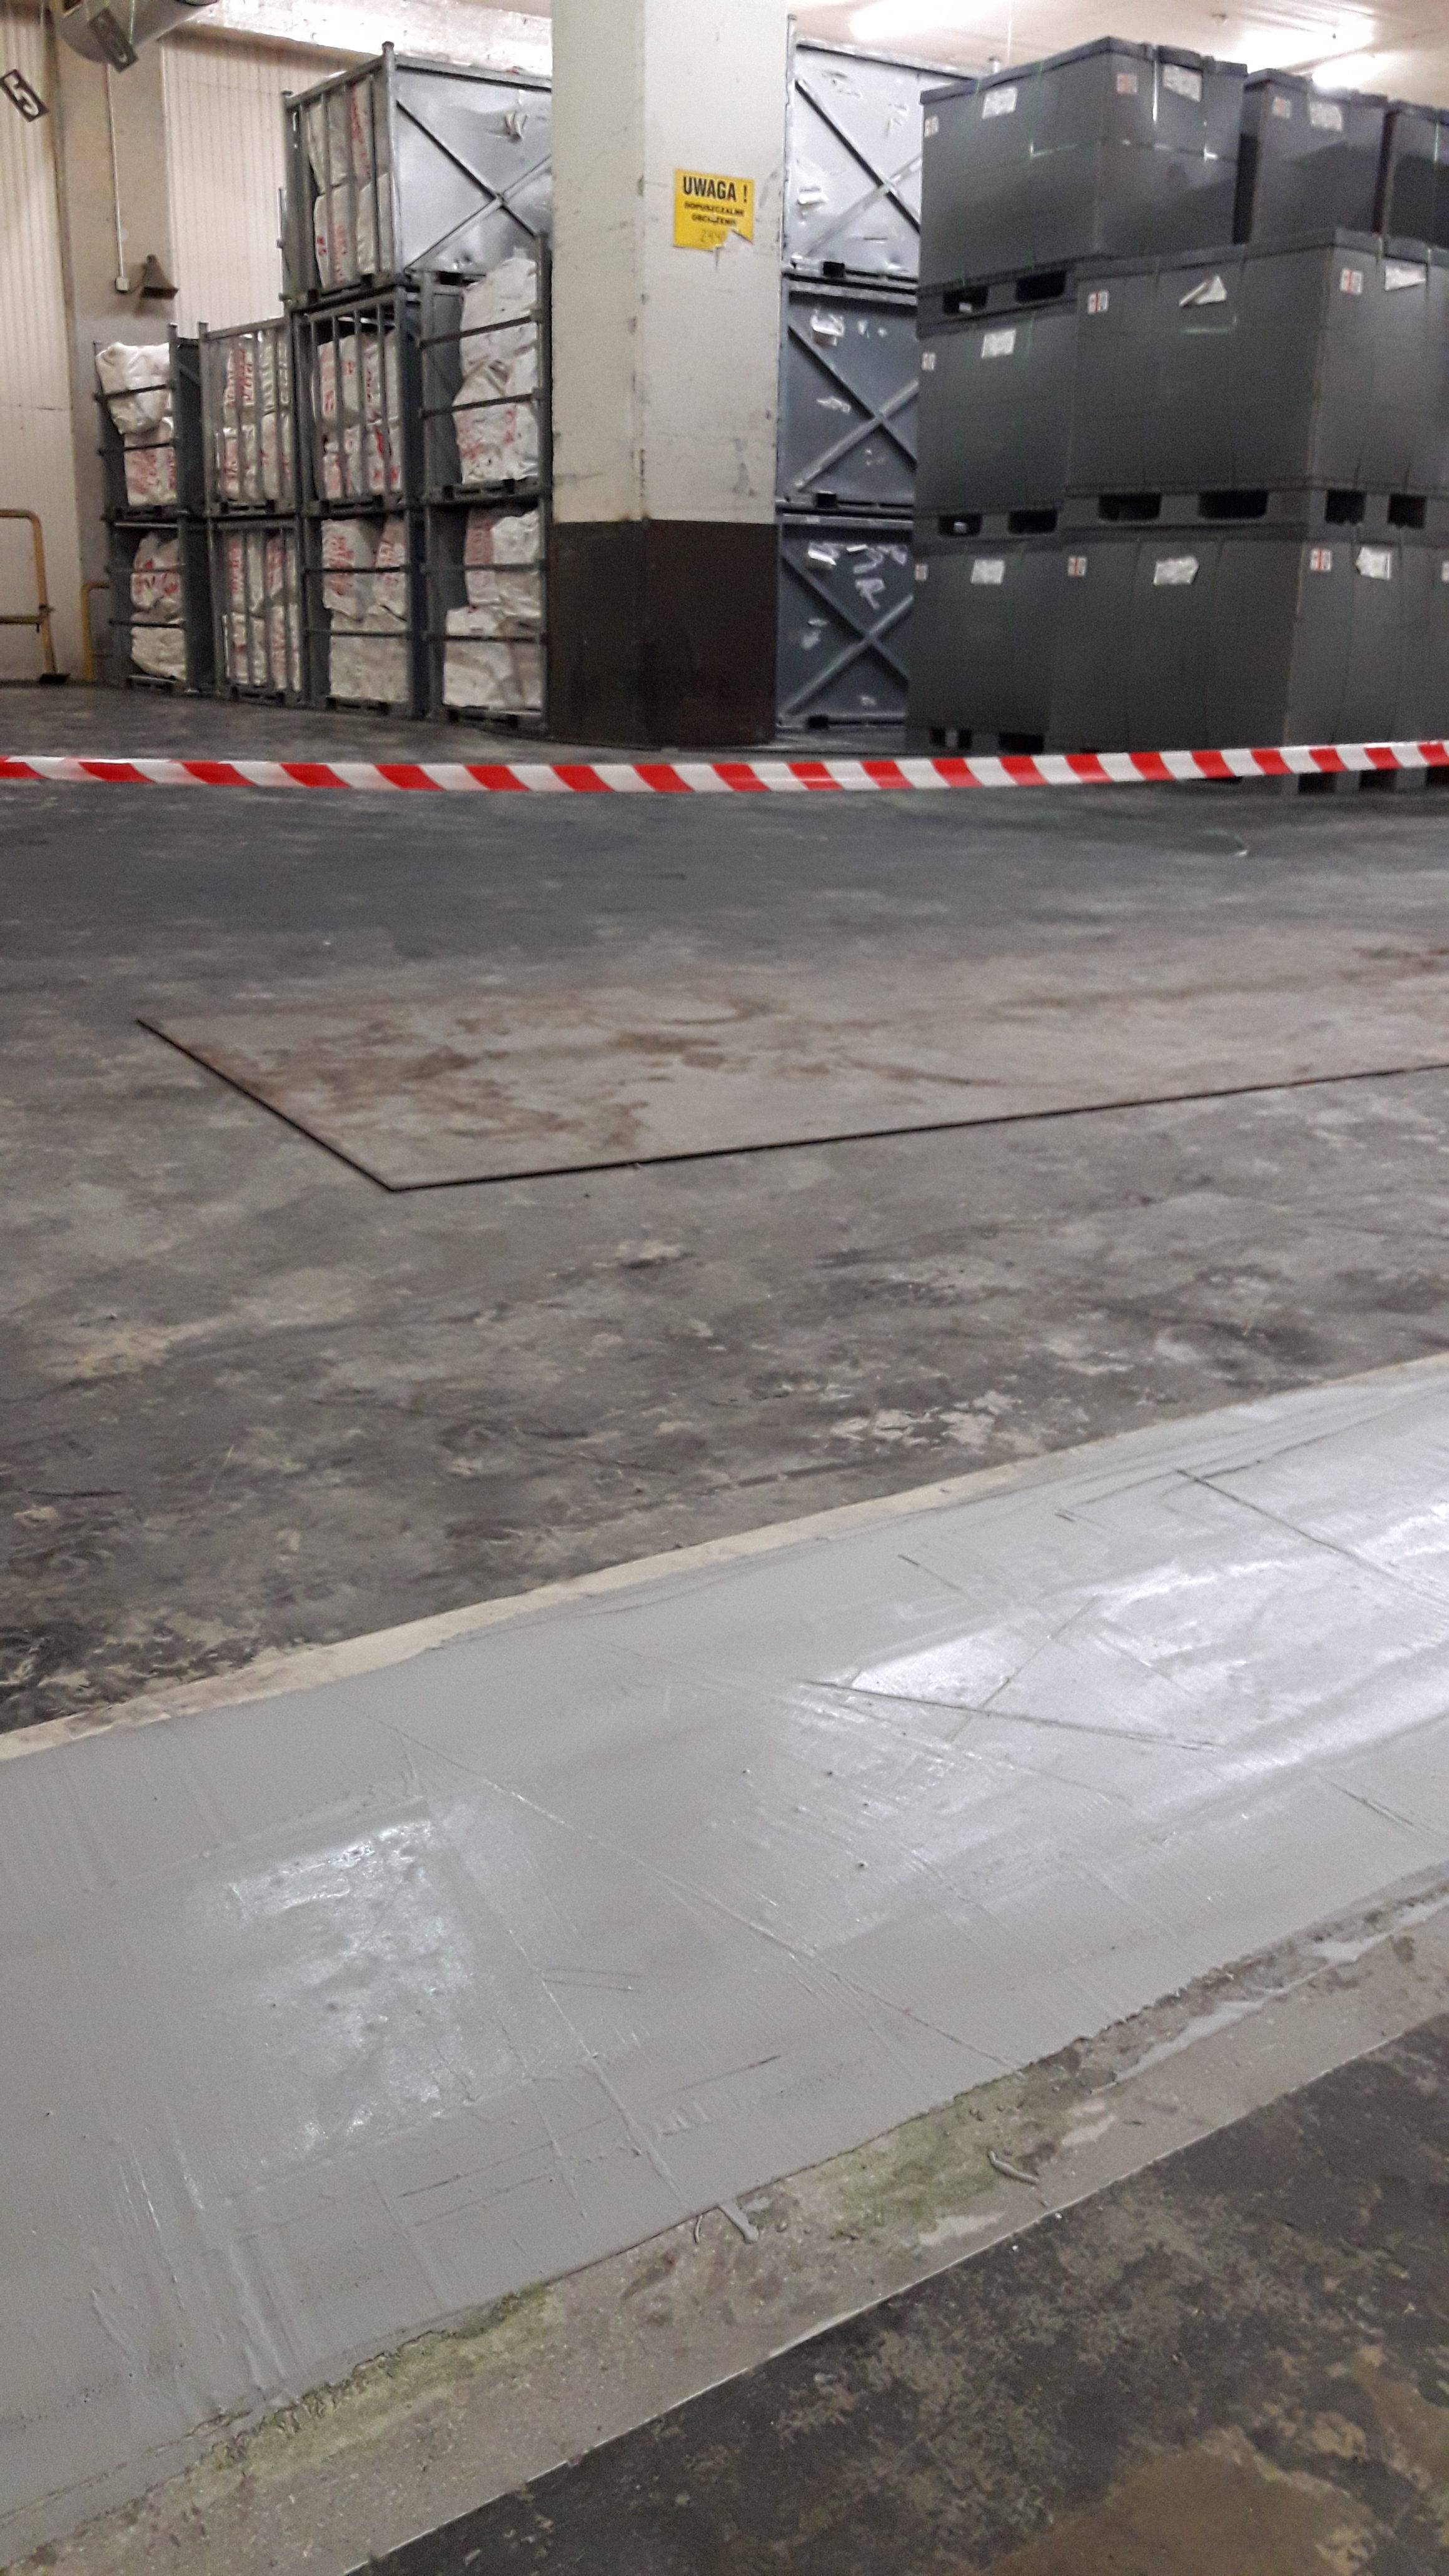 Ultra Posadzki - Dariusz Sanigórski Flooring Projects Management - dylatacje Quiflex